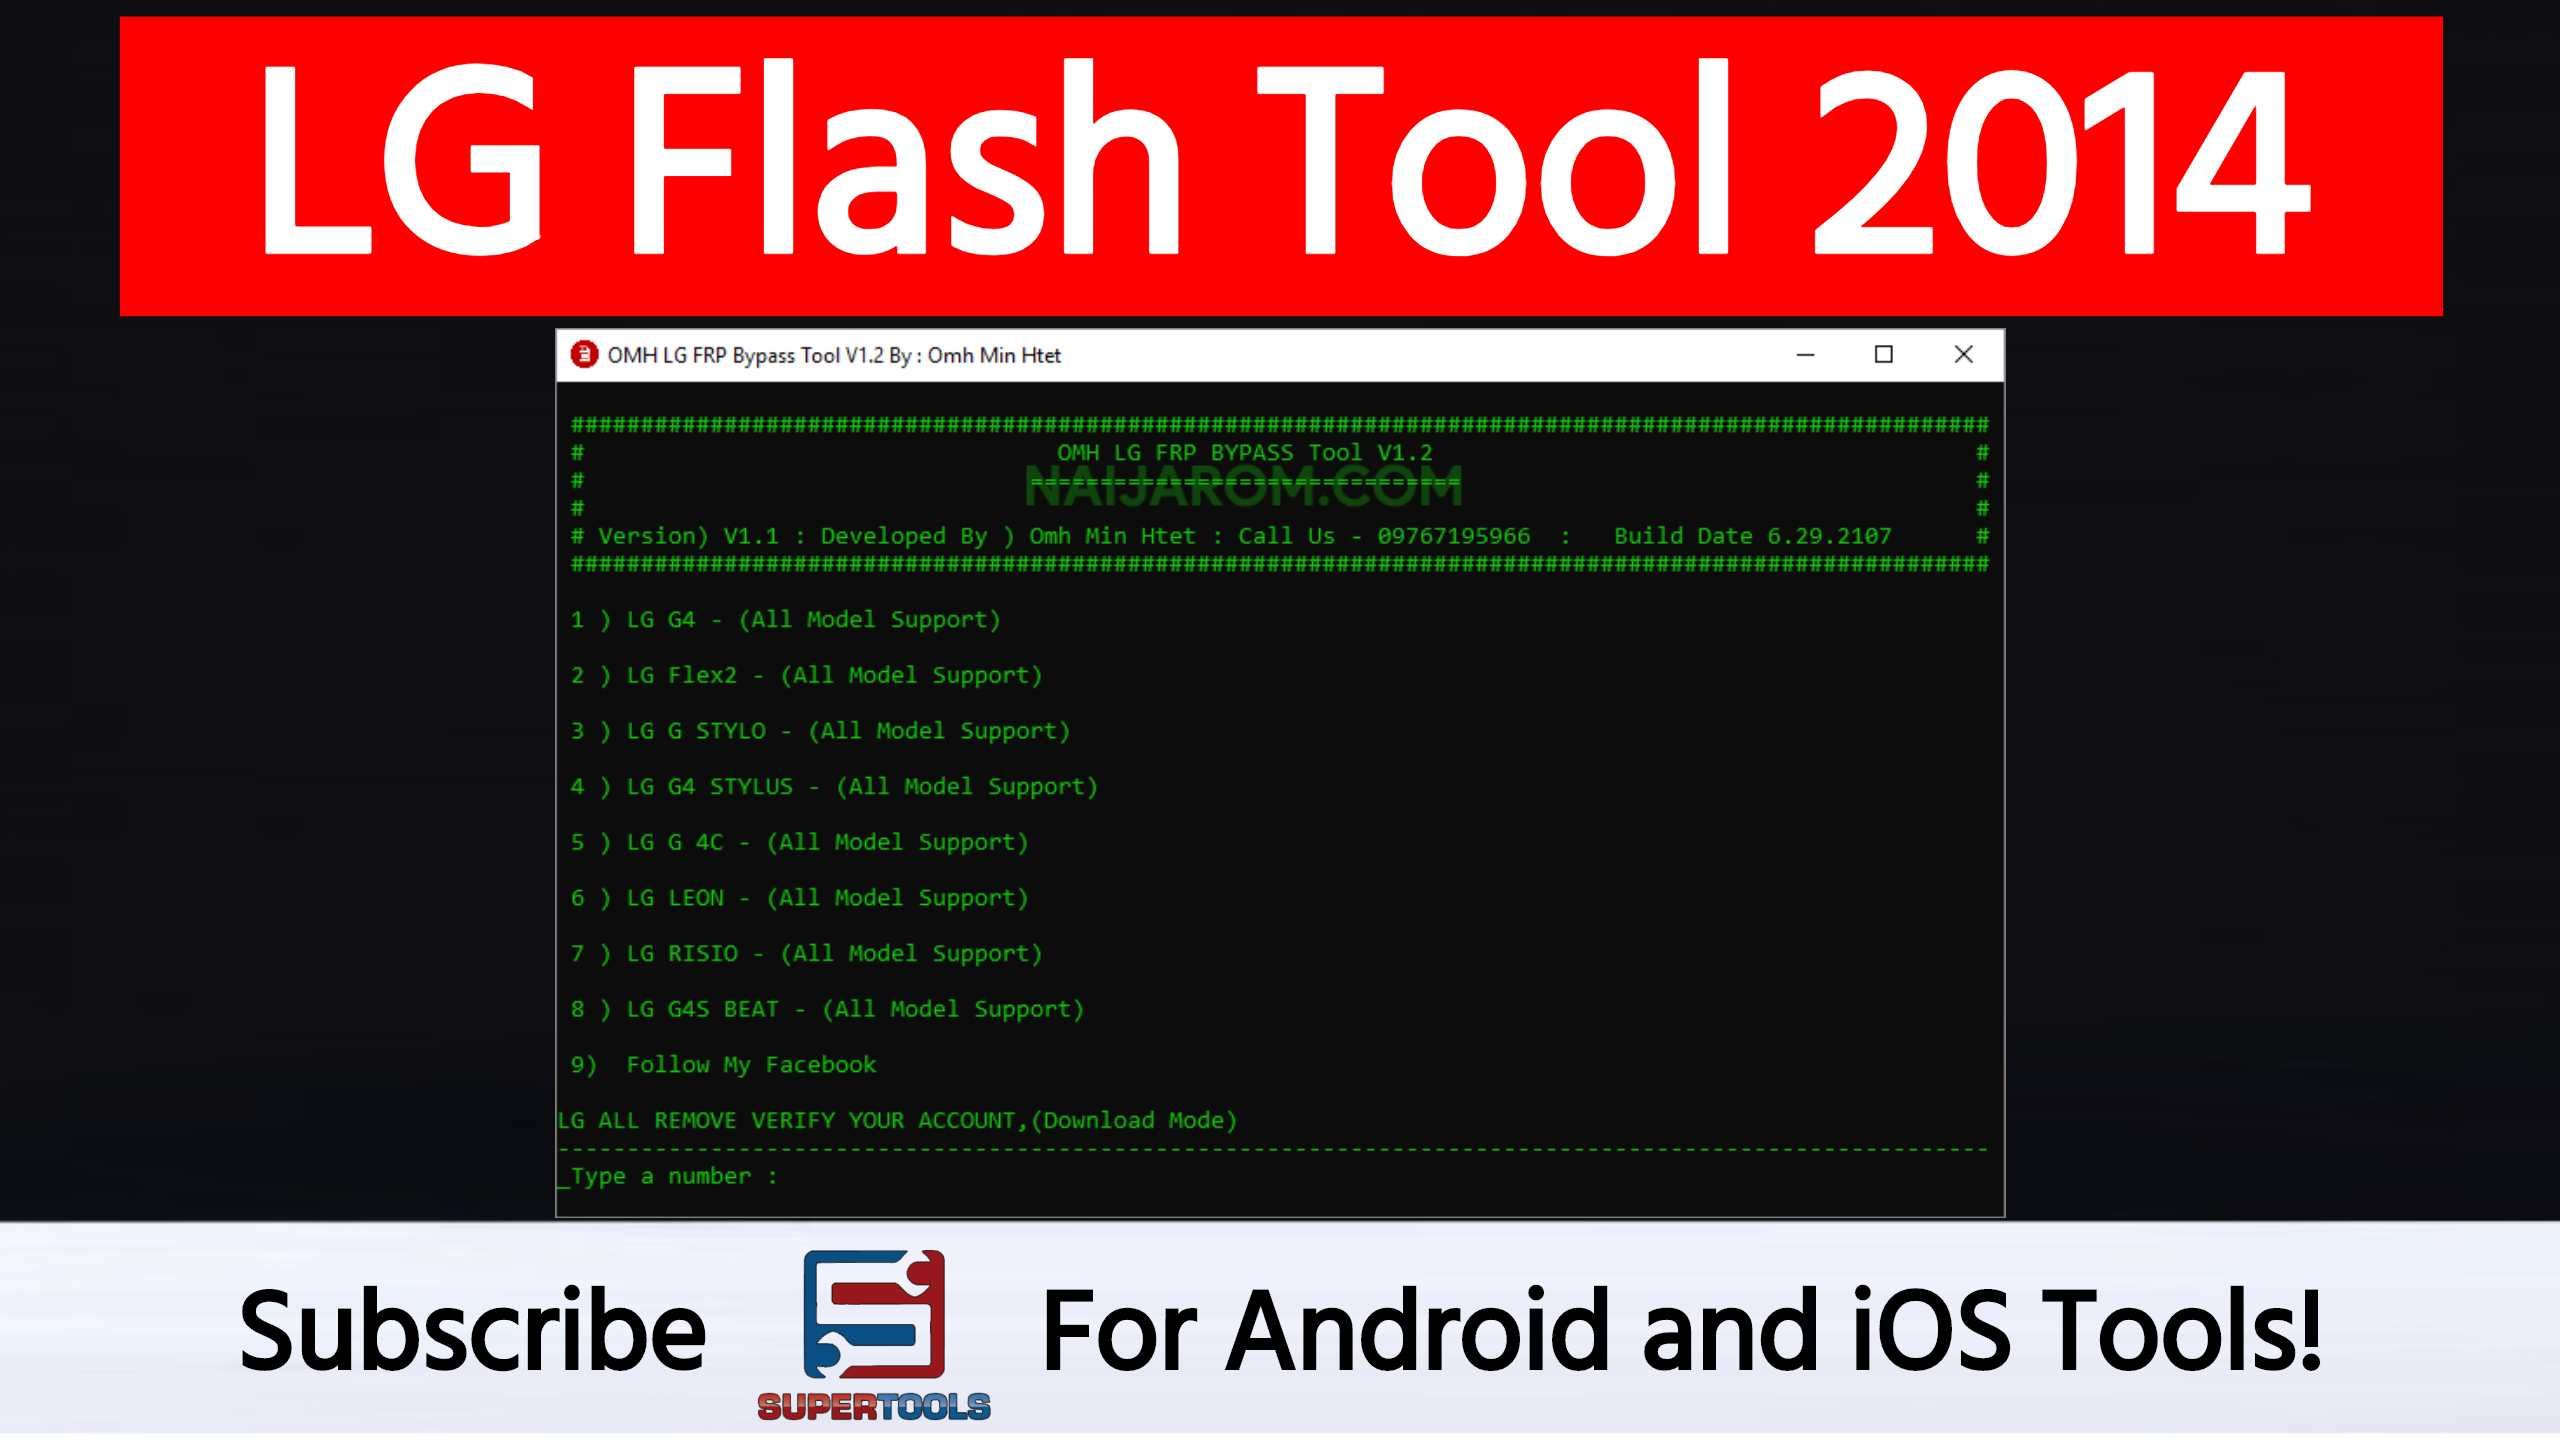 Descarga segura de LG Flash Tool 2014 ¡Sin complicaciones!